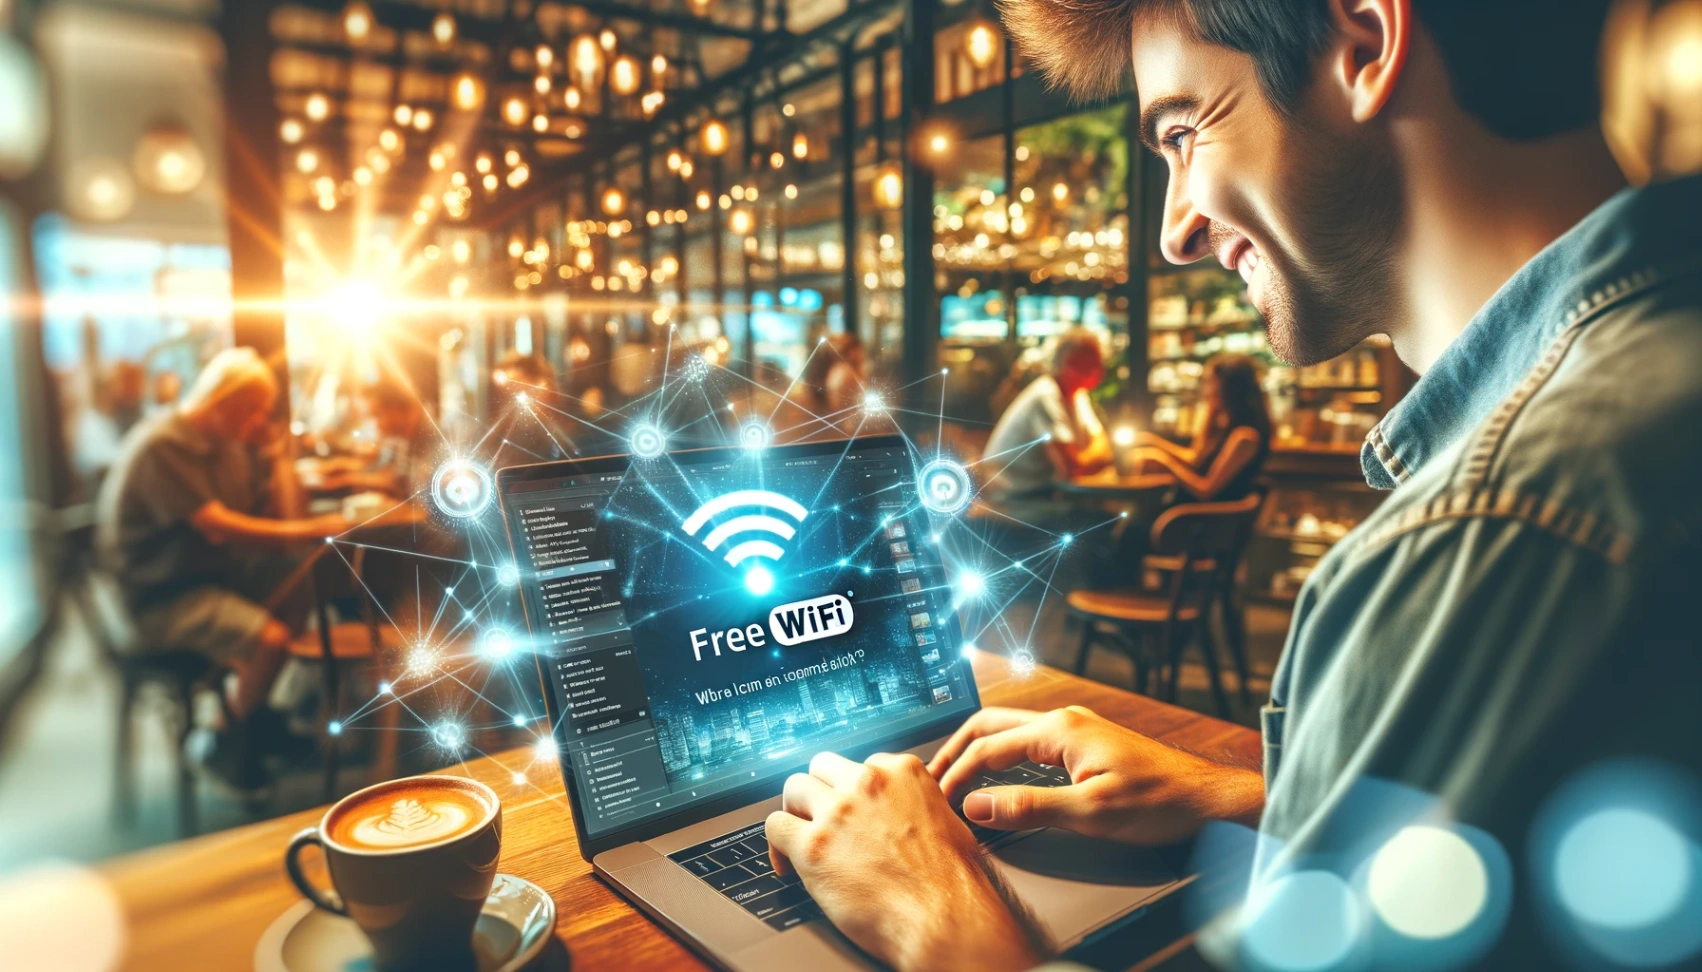 Lær trin for trin at finde gratis WiFi uden omkostninger